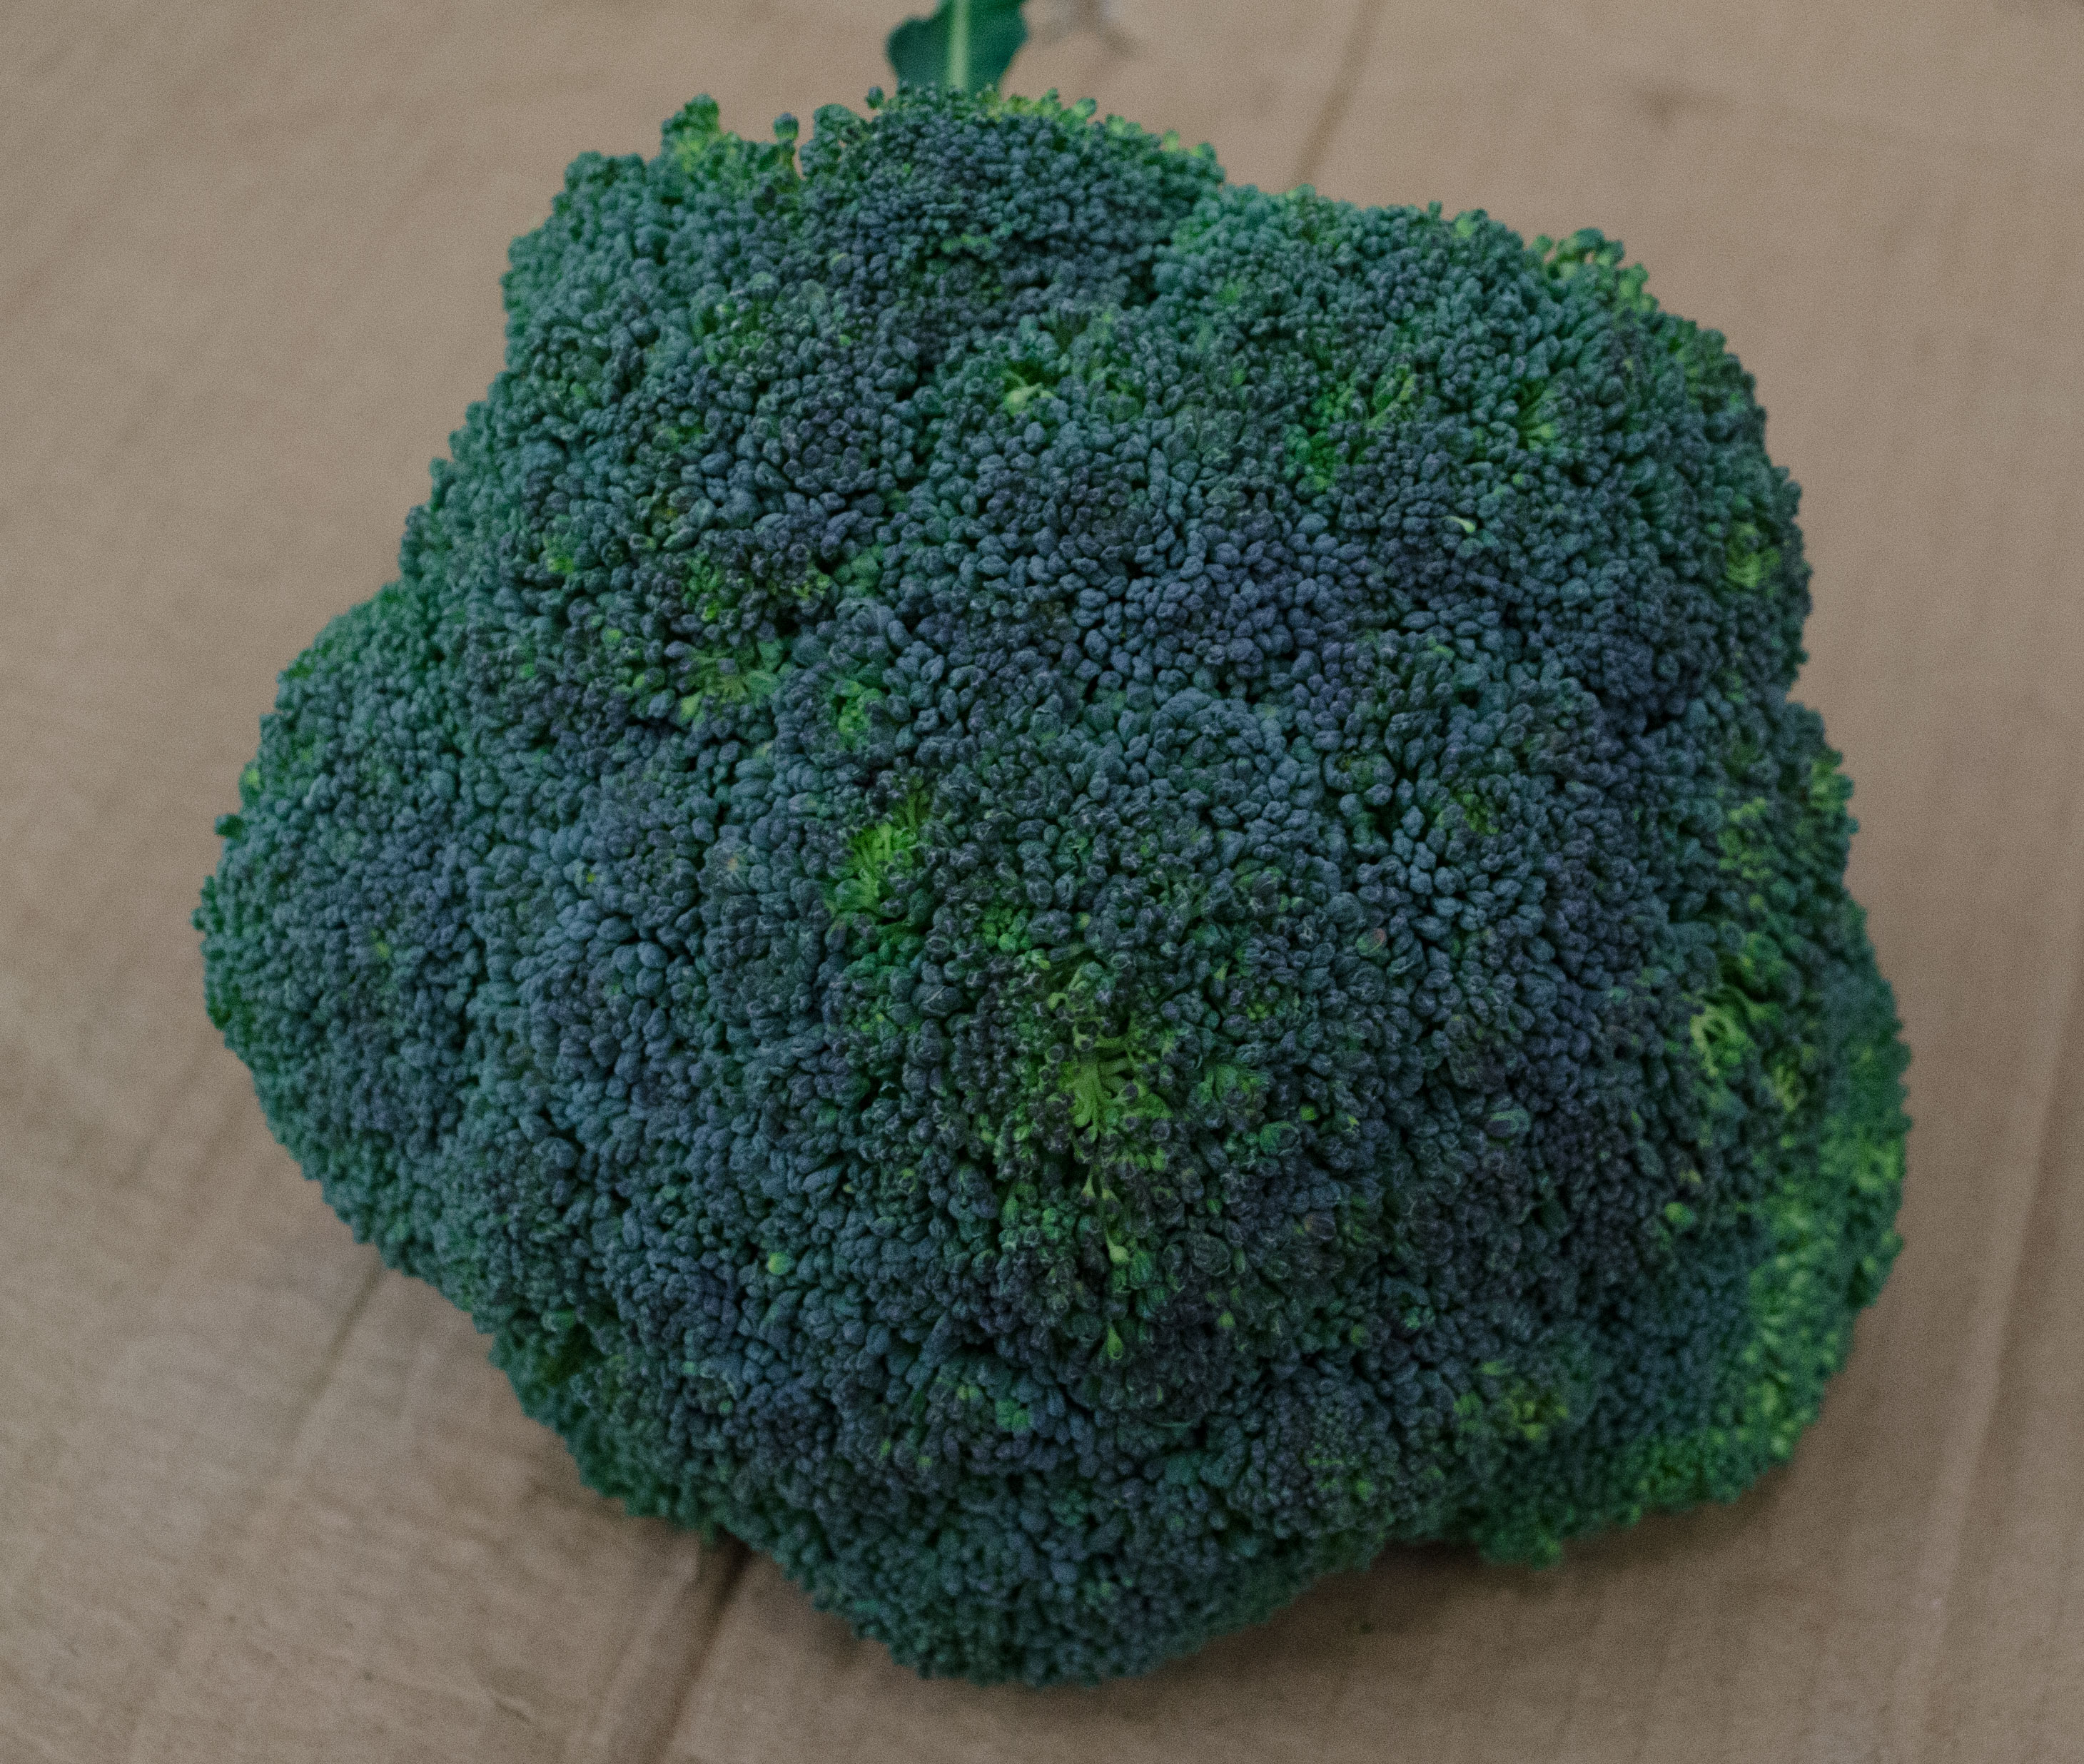 Broccoli Kiste